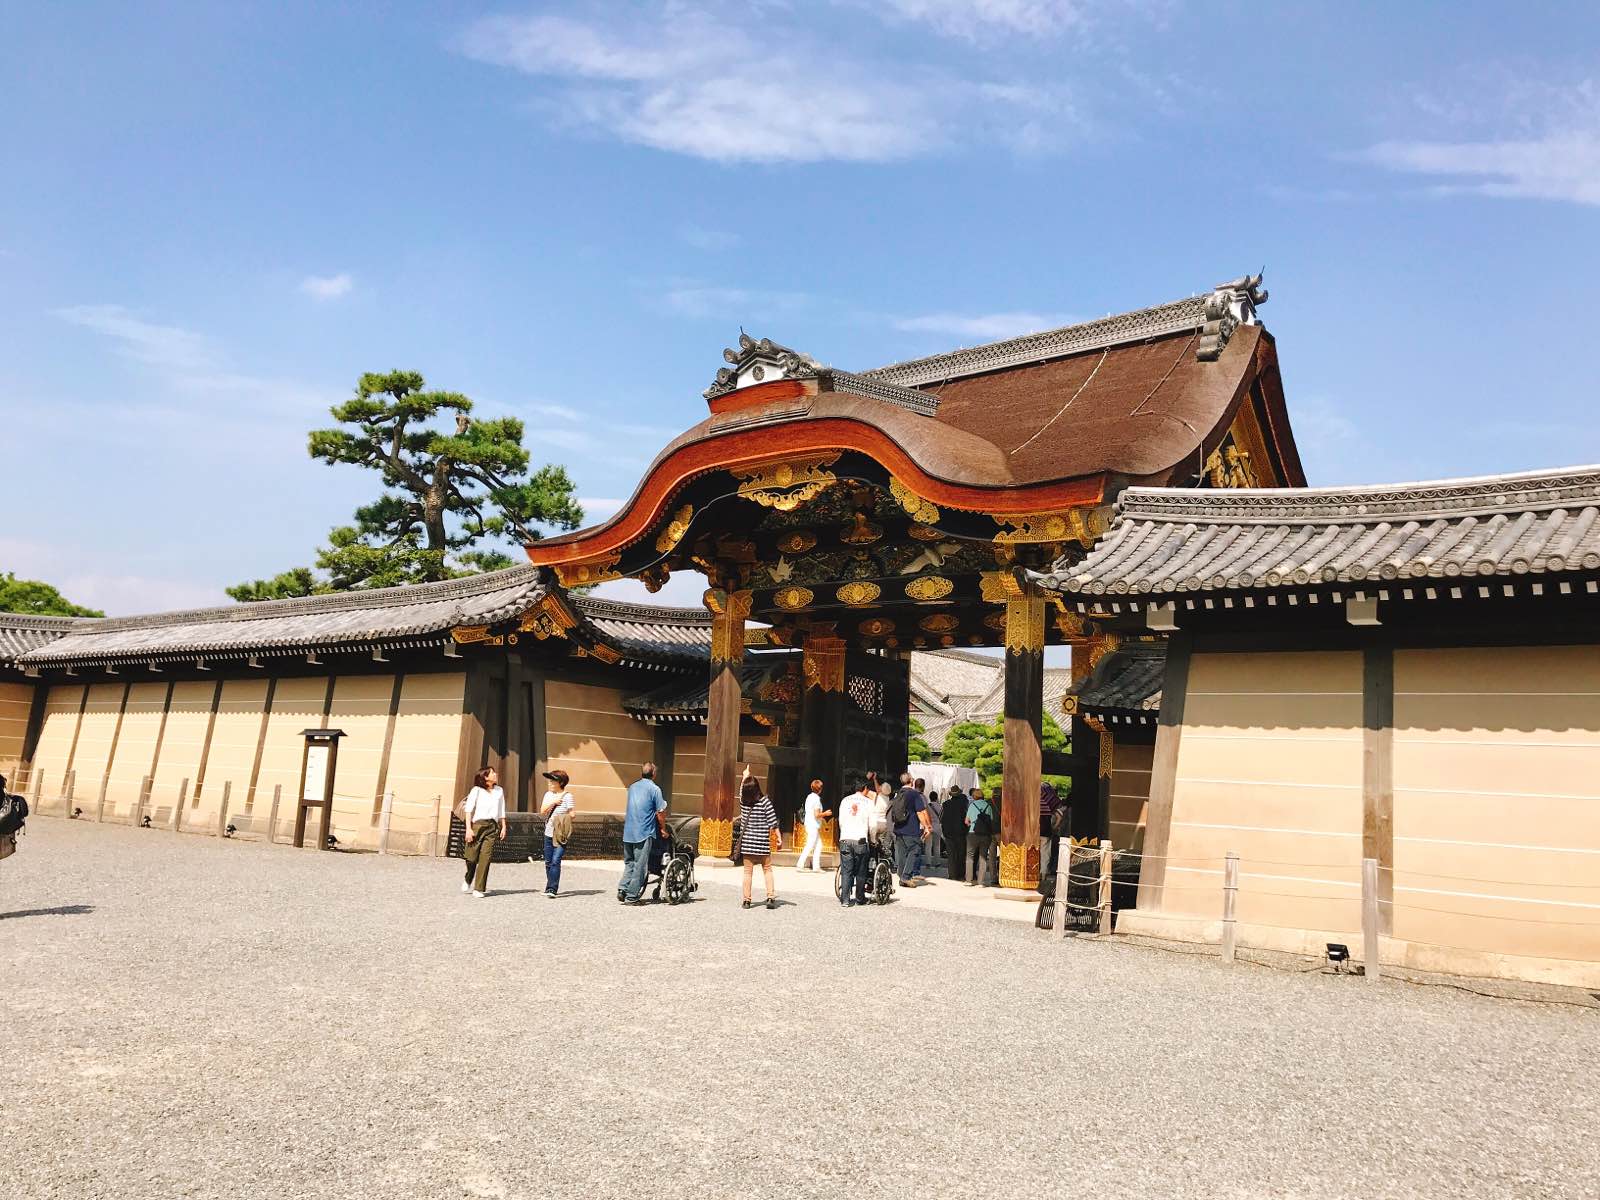 京都的最后一站留给二条城，还是值得来看一看的。